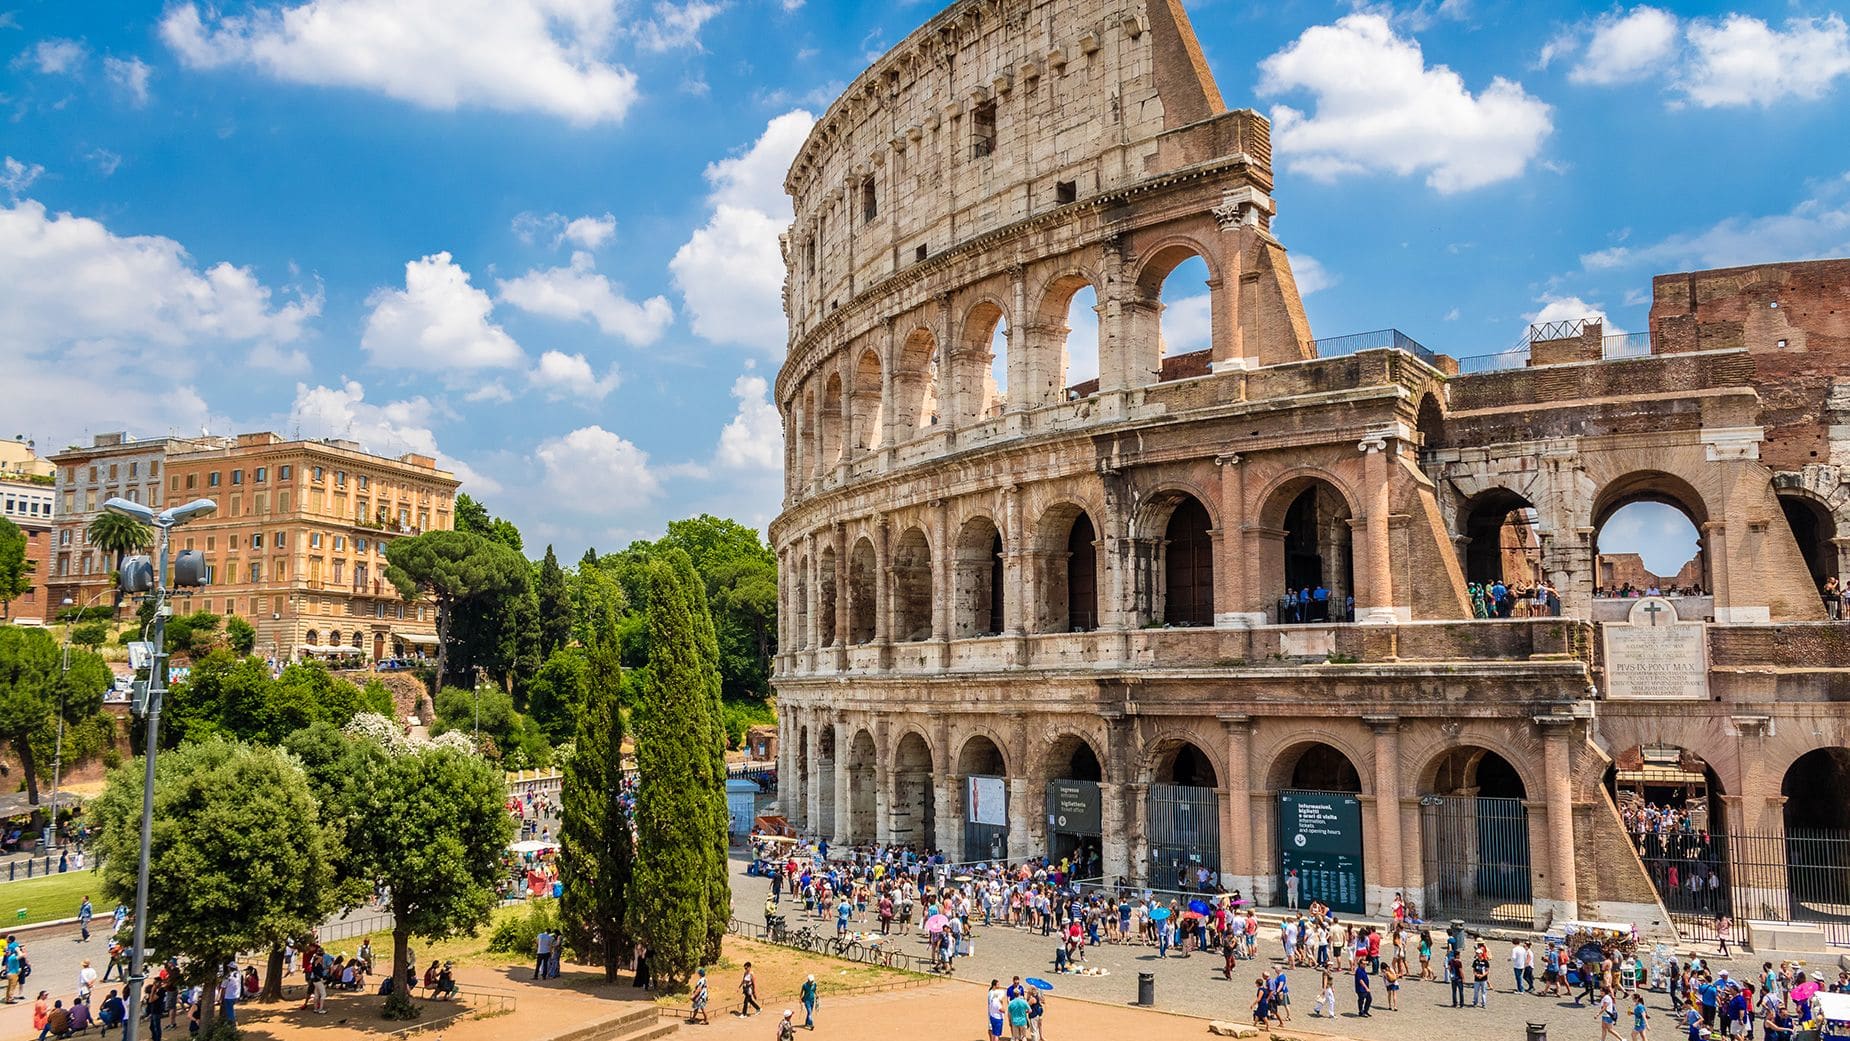 موقع اغتيال تحوّل إلى نقطة جذب سياحية في روما.. ما السبب؟